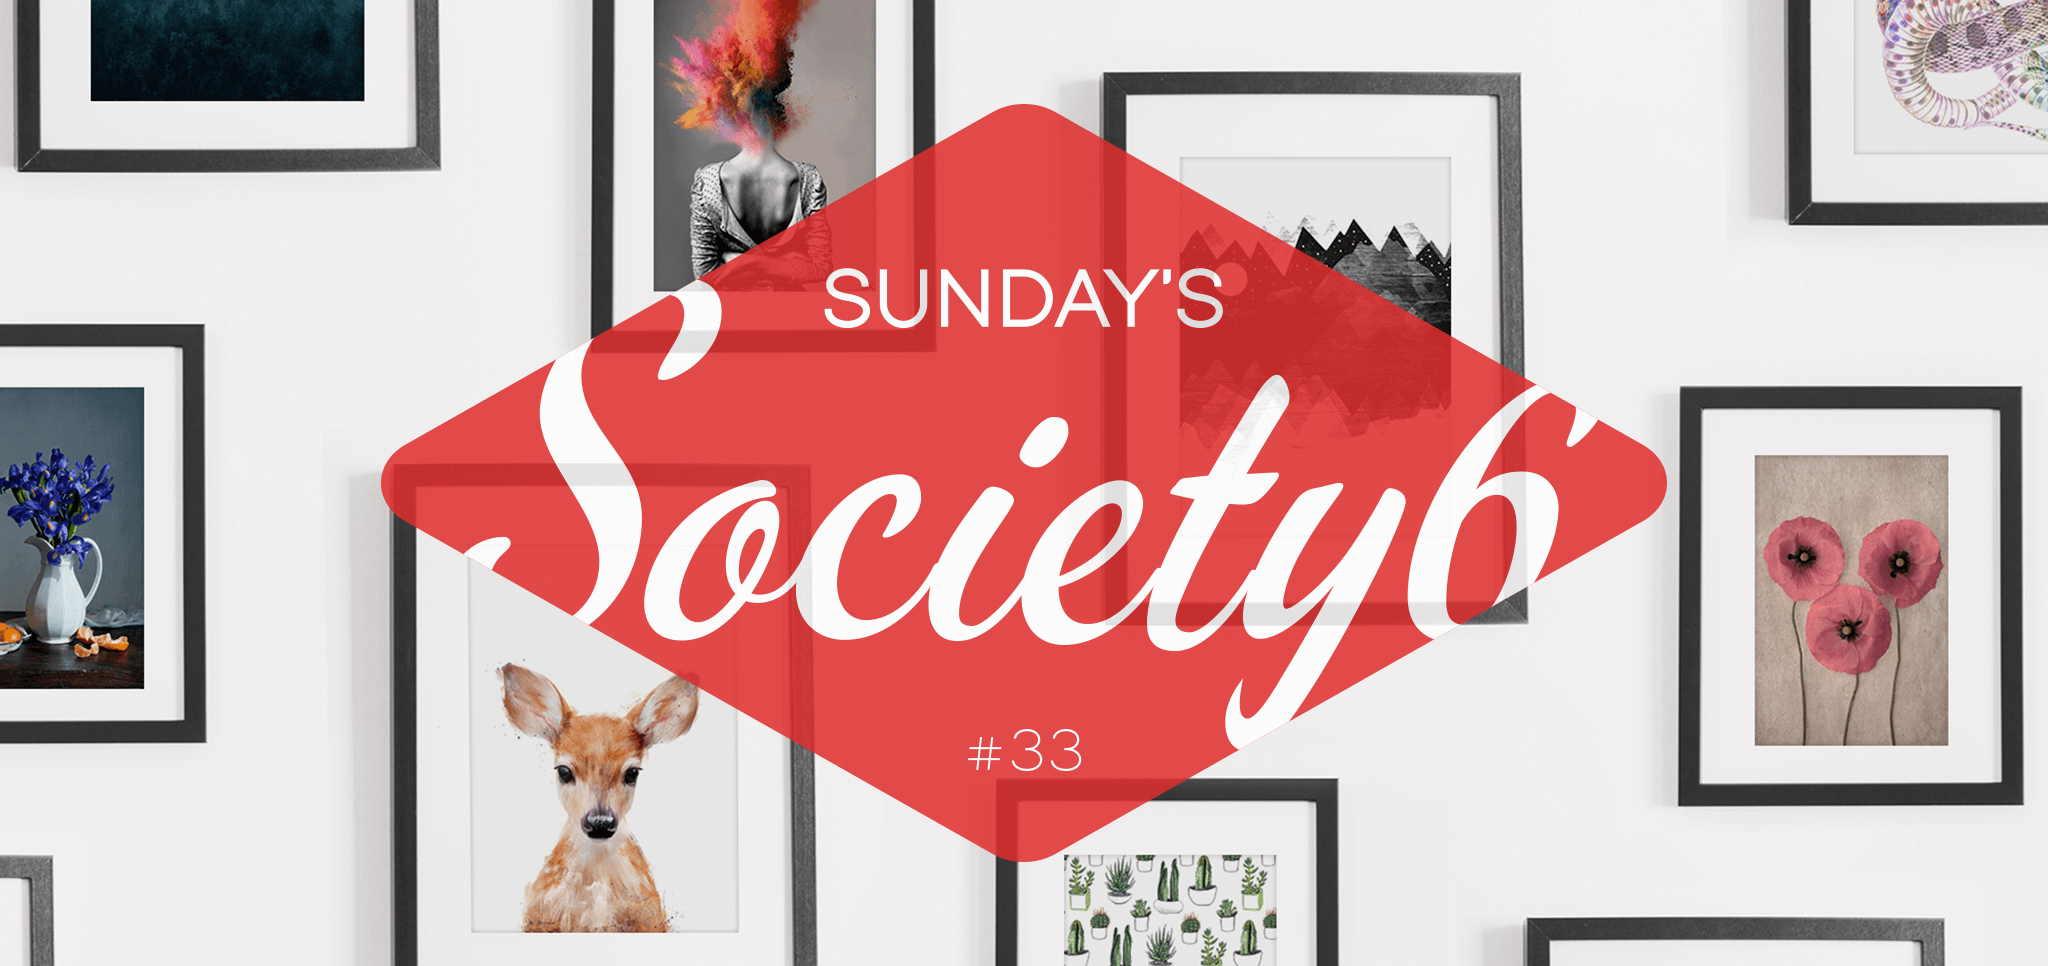 Sunday’s Society6 #33 | Zie de maan schijnt…